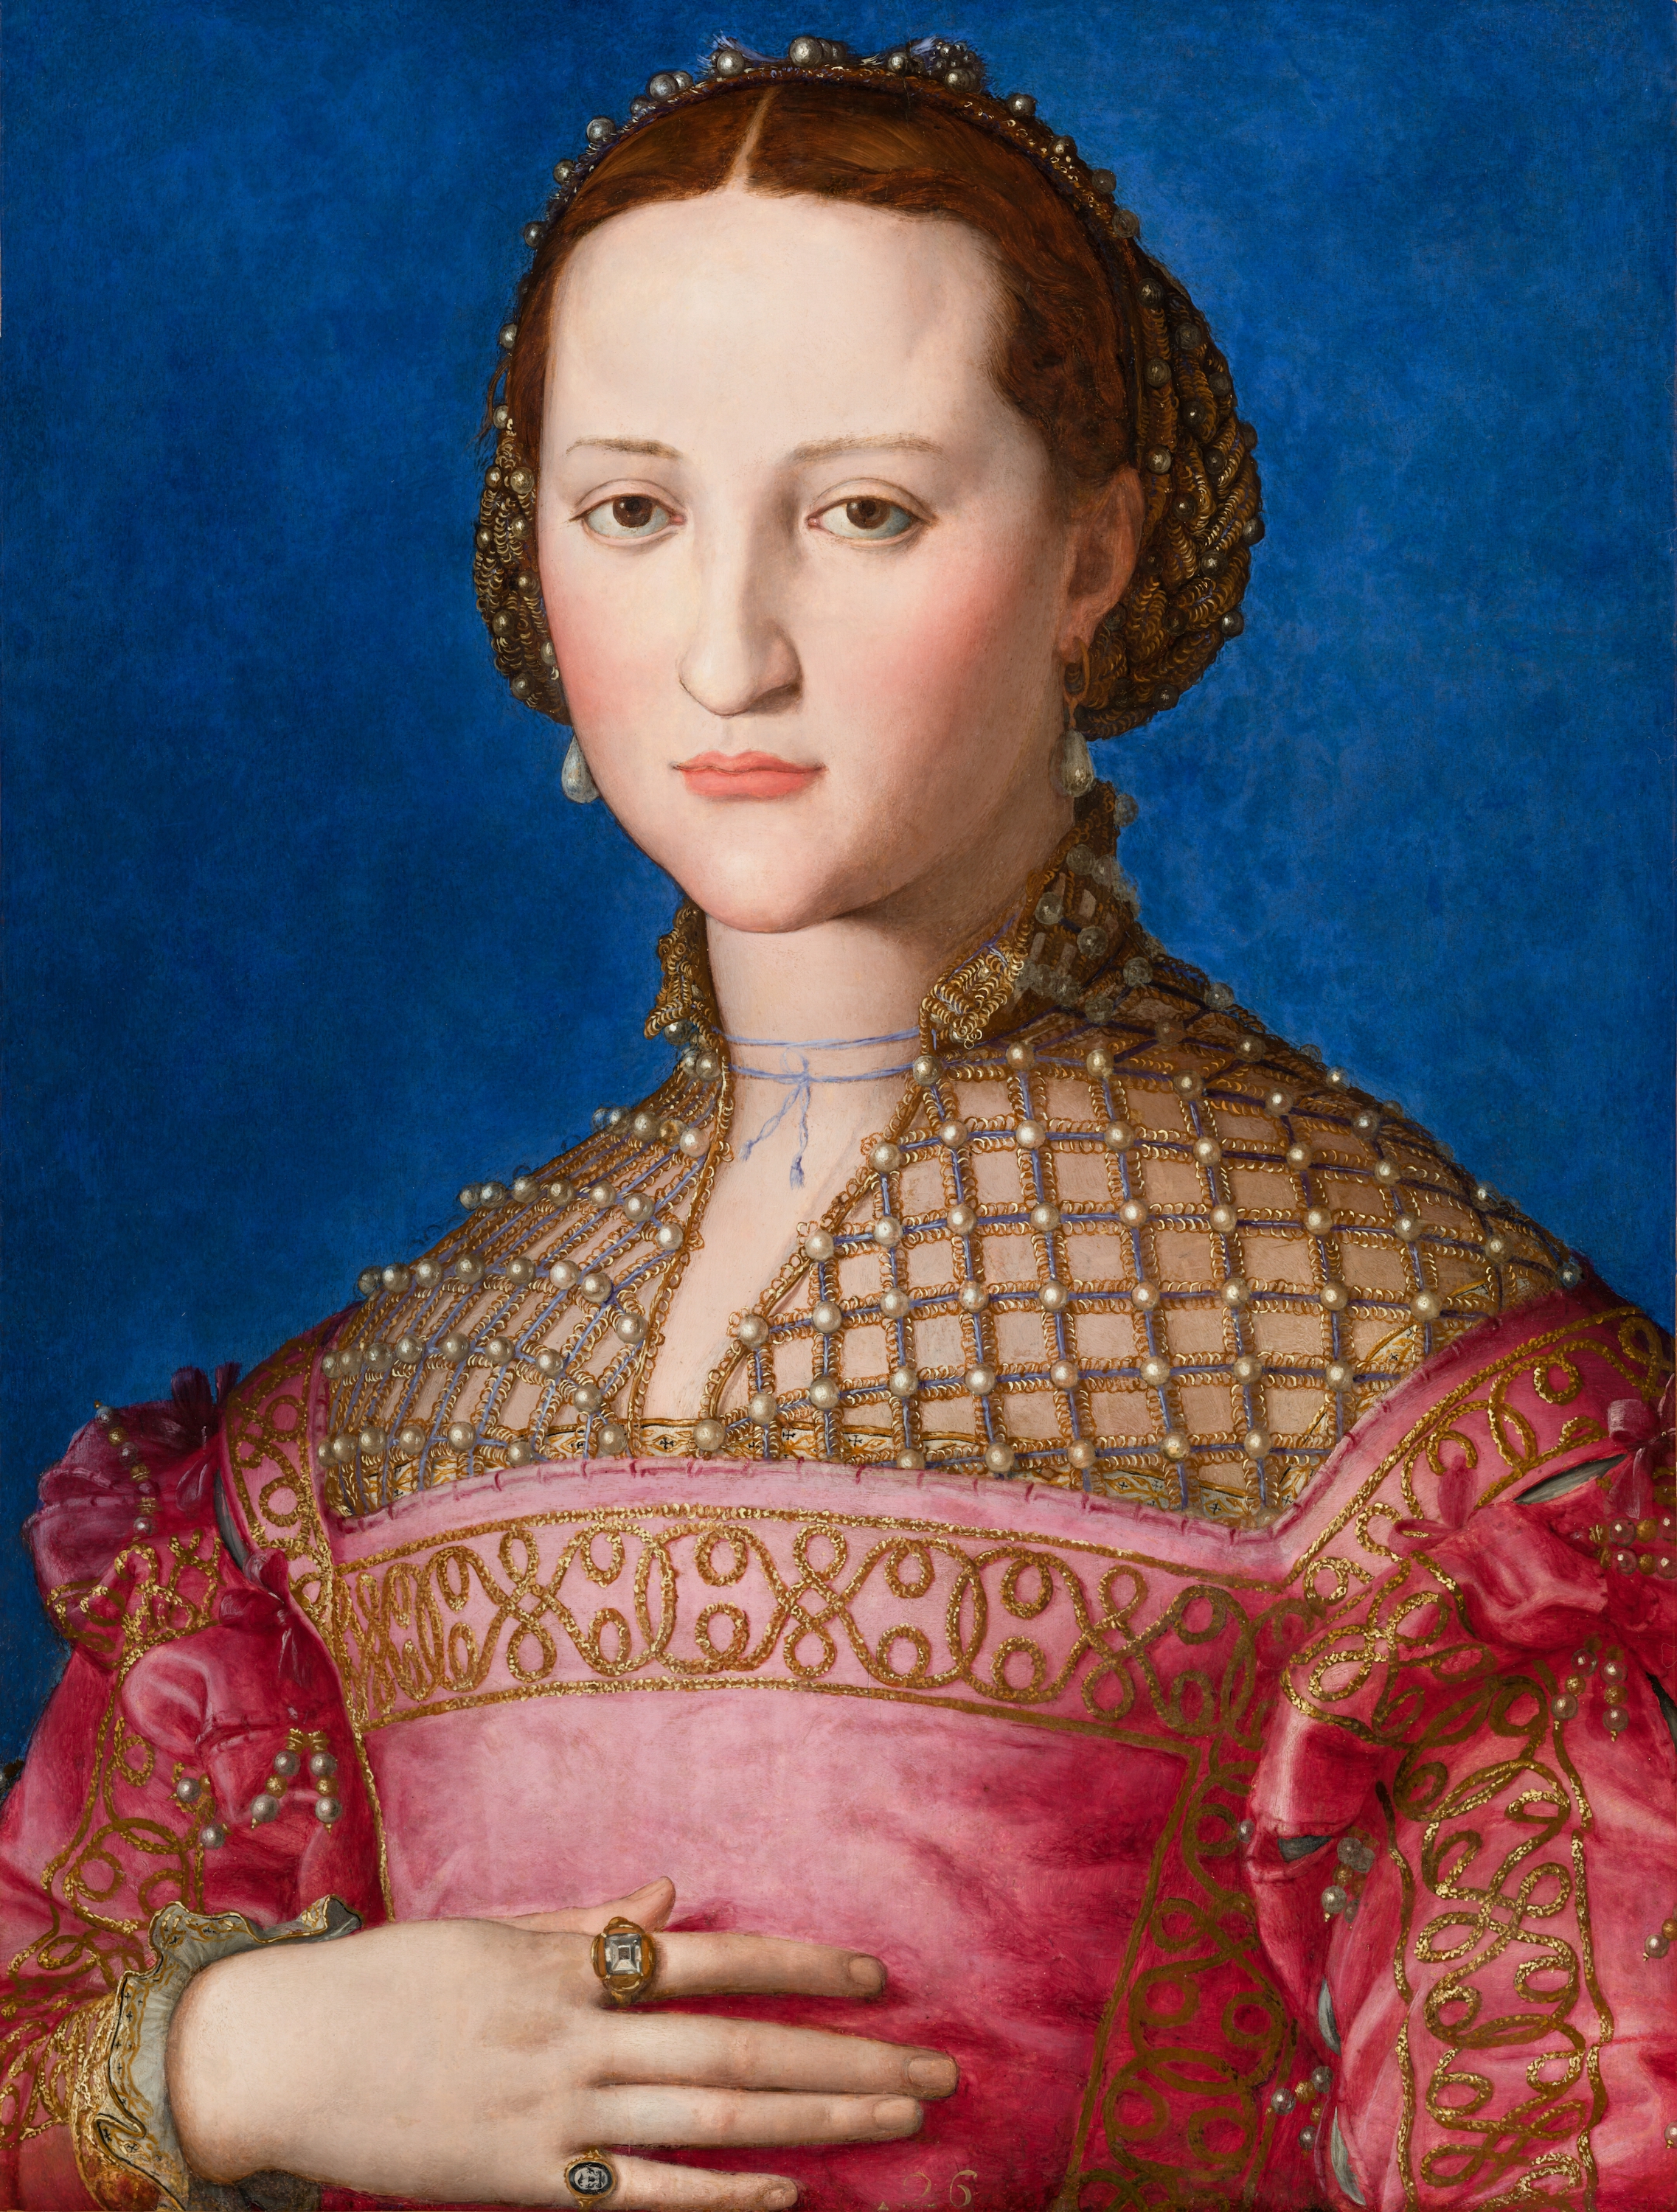 Ritratto di Eleonora di Toledo by Agnolo Bronzino - c. 1543 - 59 x 46 cm 